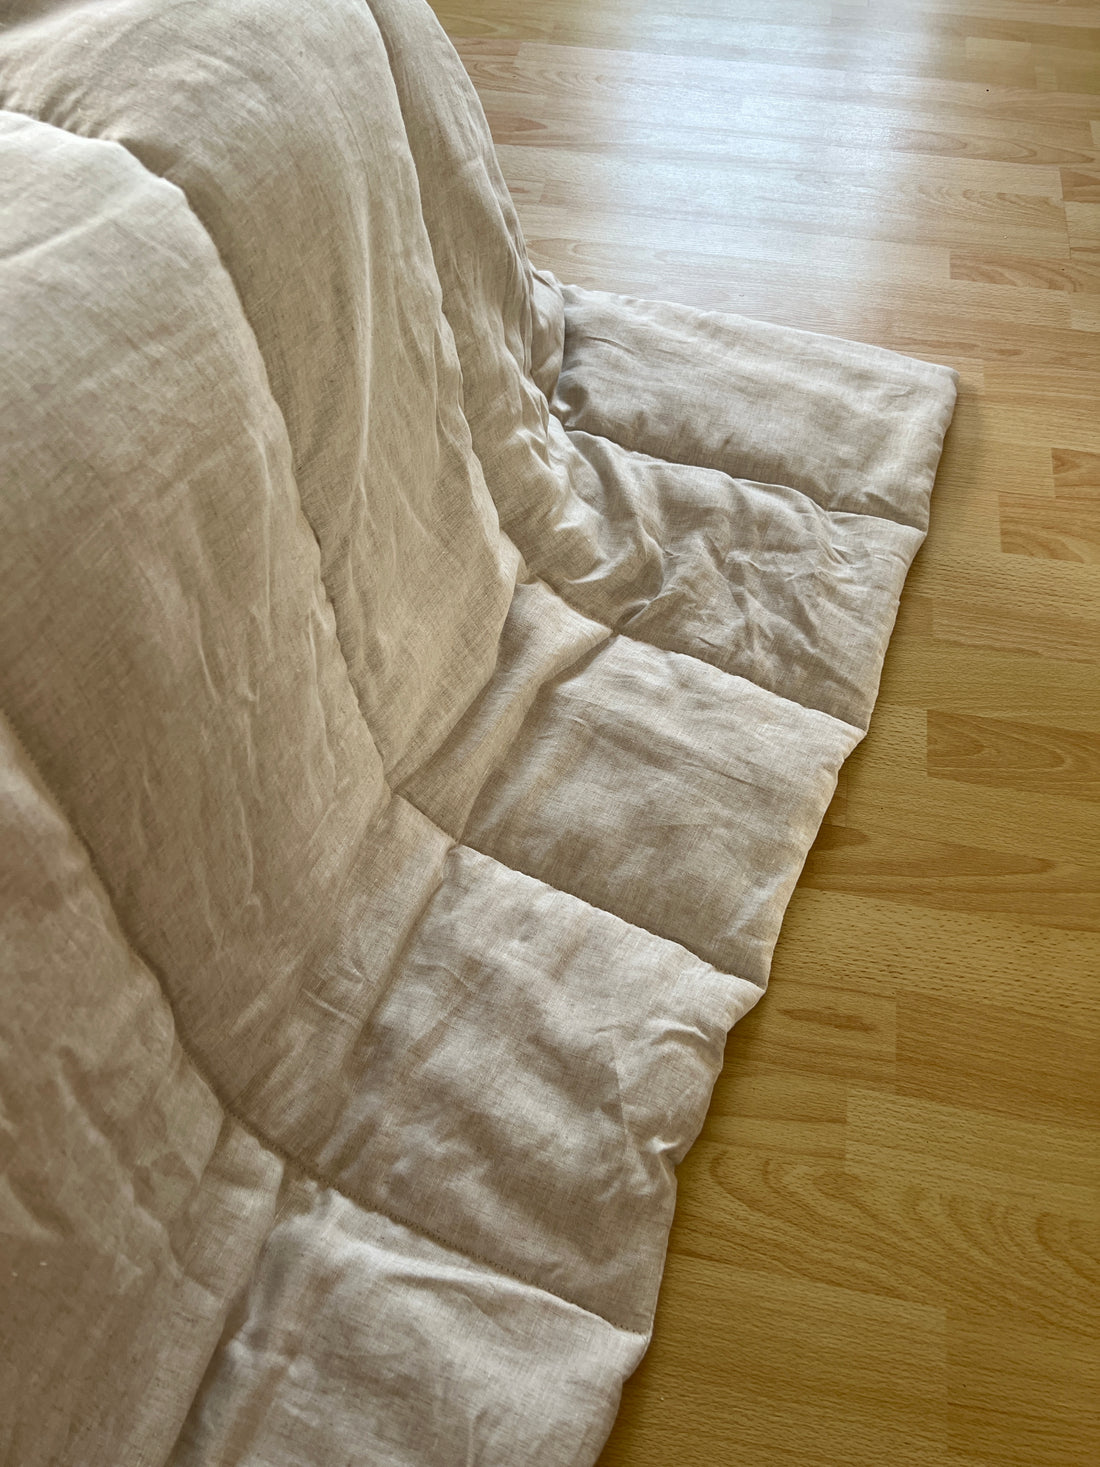 Warm Hemp Blanket HEMP duvet insert comforter HEMP natural non-dyed fabric filled organic Hemp fiber filler Custom size Twin Full Queen King